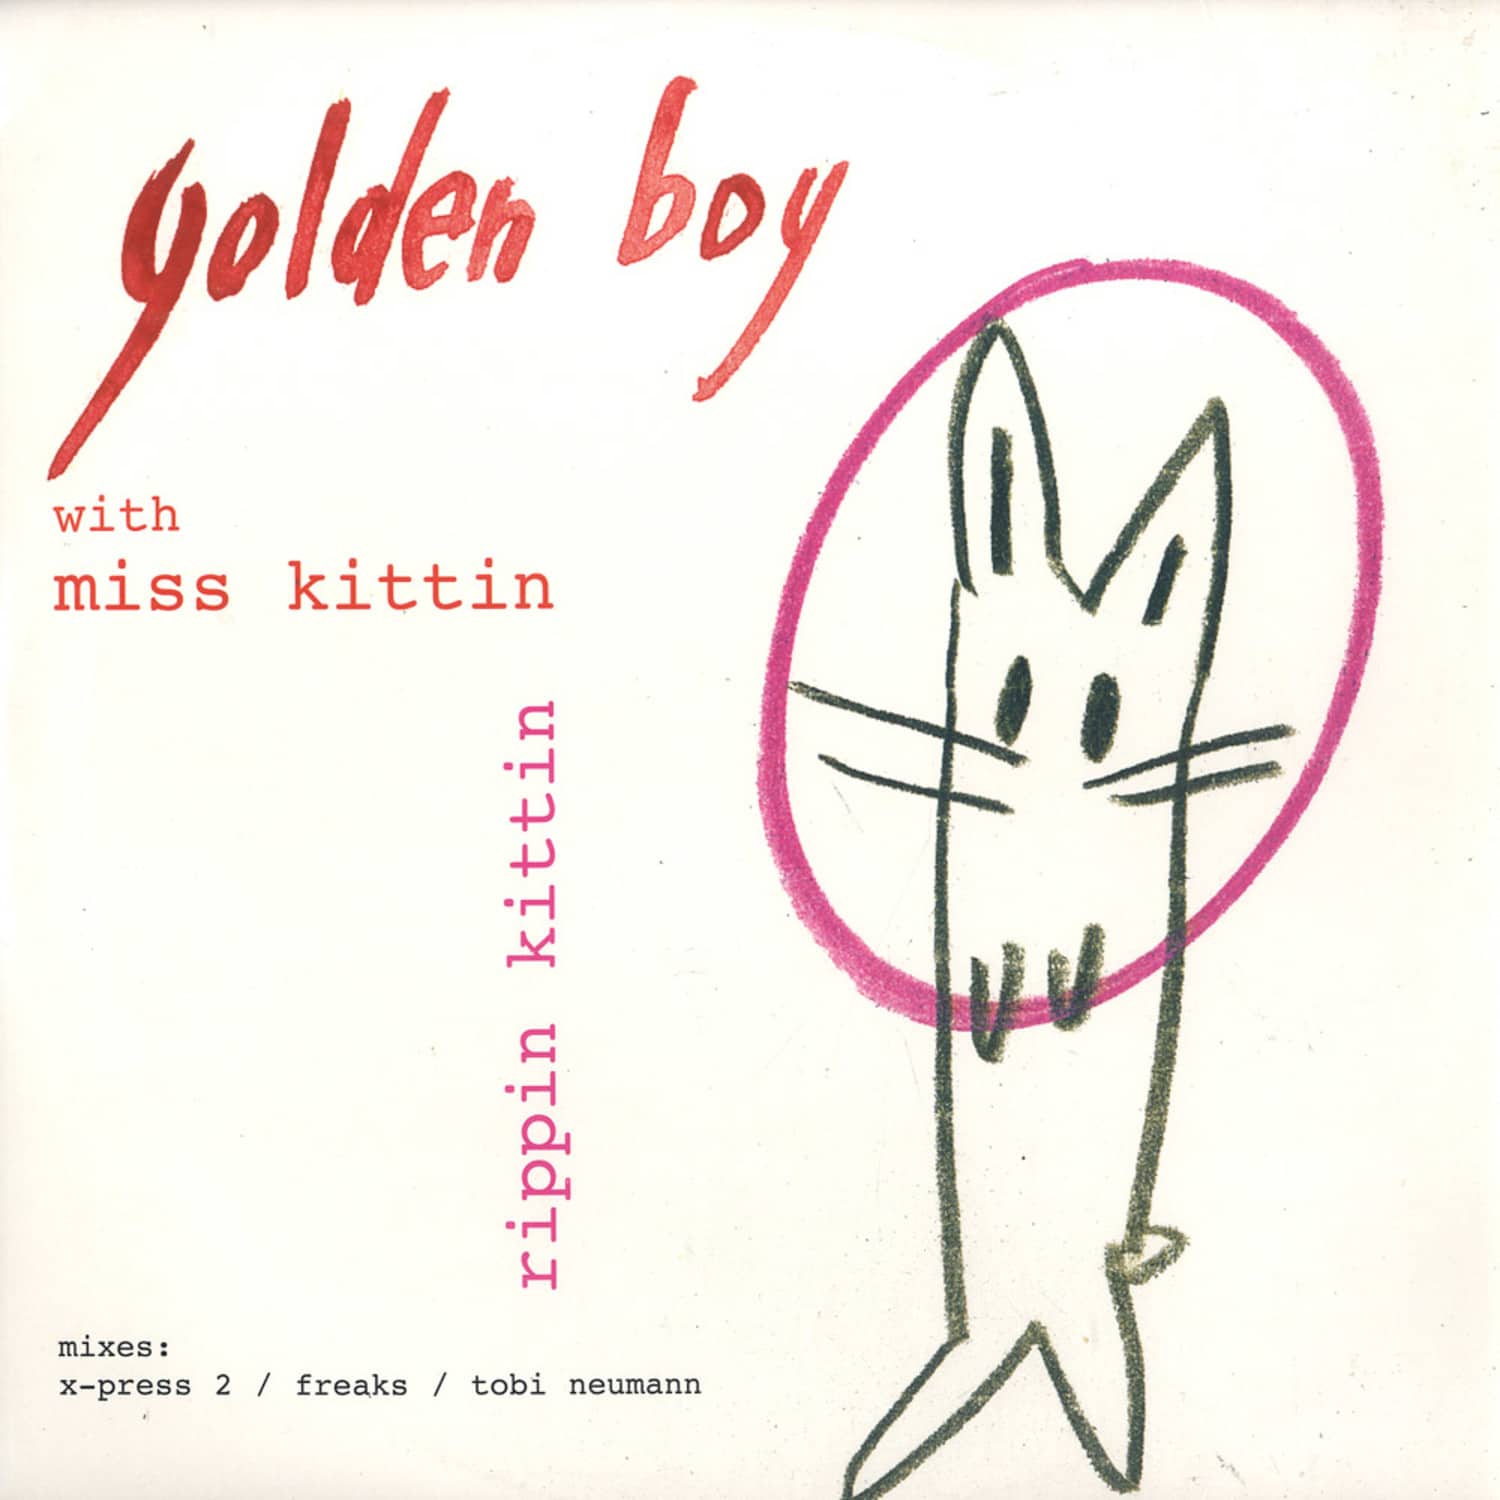 Golden Boy with Miss Kittin - RIPPIN KITTIN MIXES